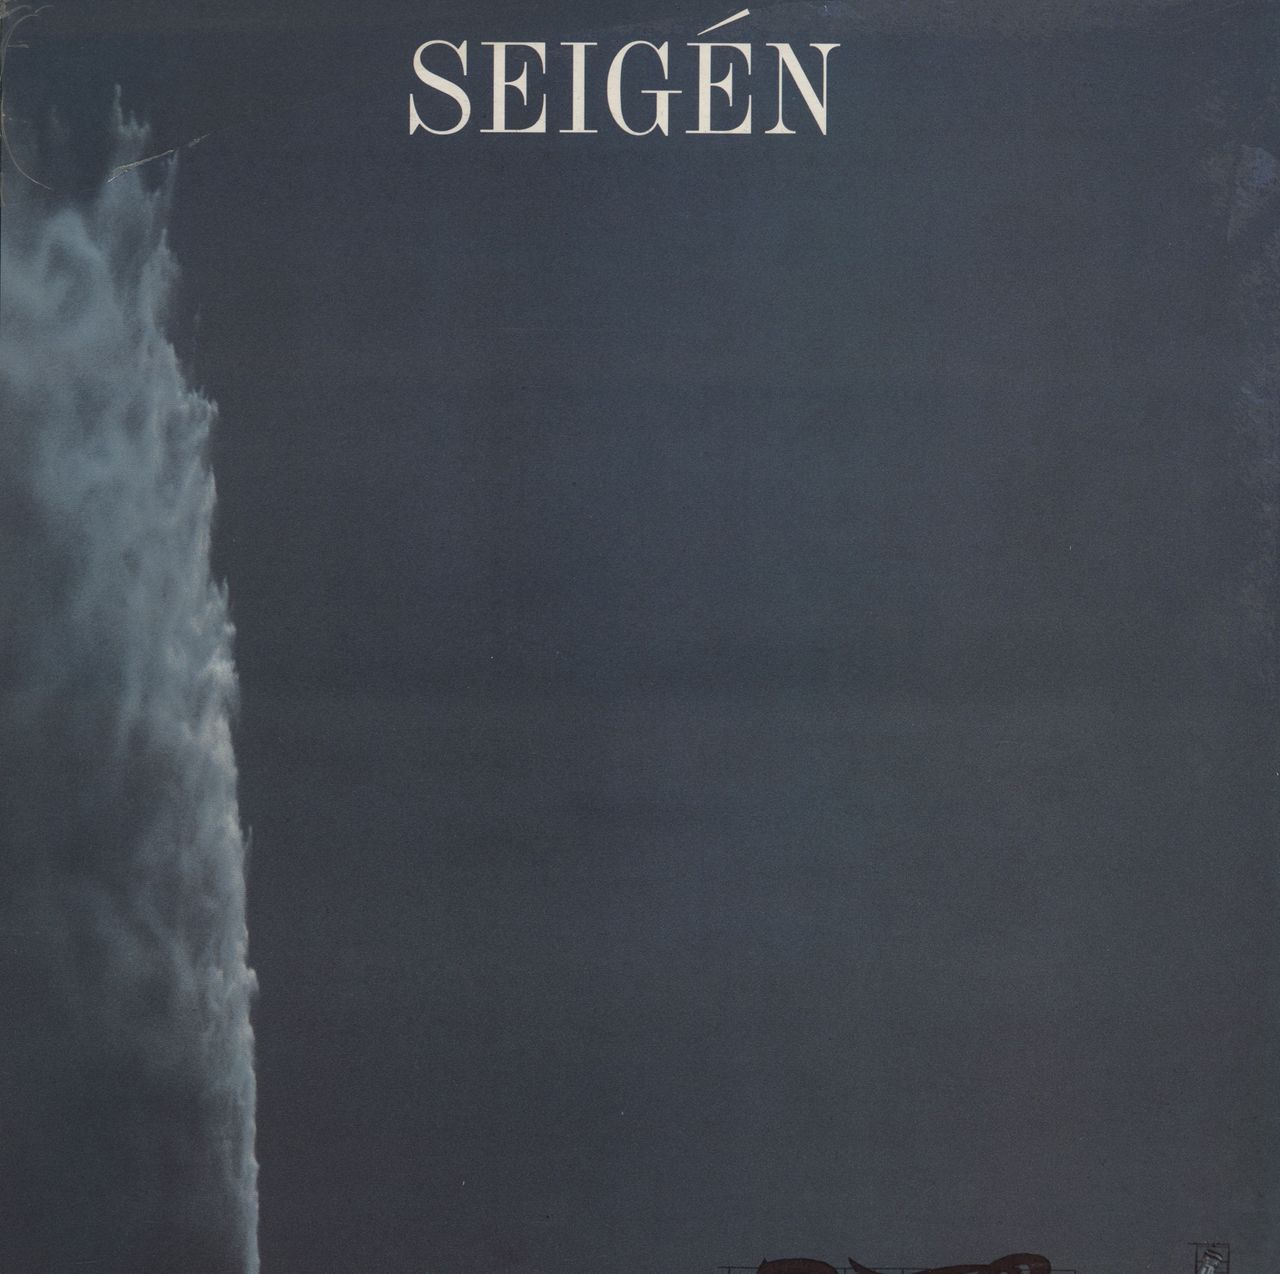 Seigén Seigén UK vinyl LP album (LP record) NEWLP100